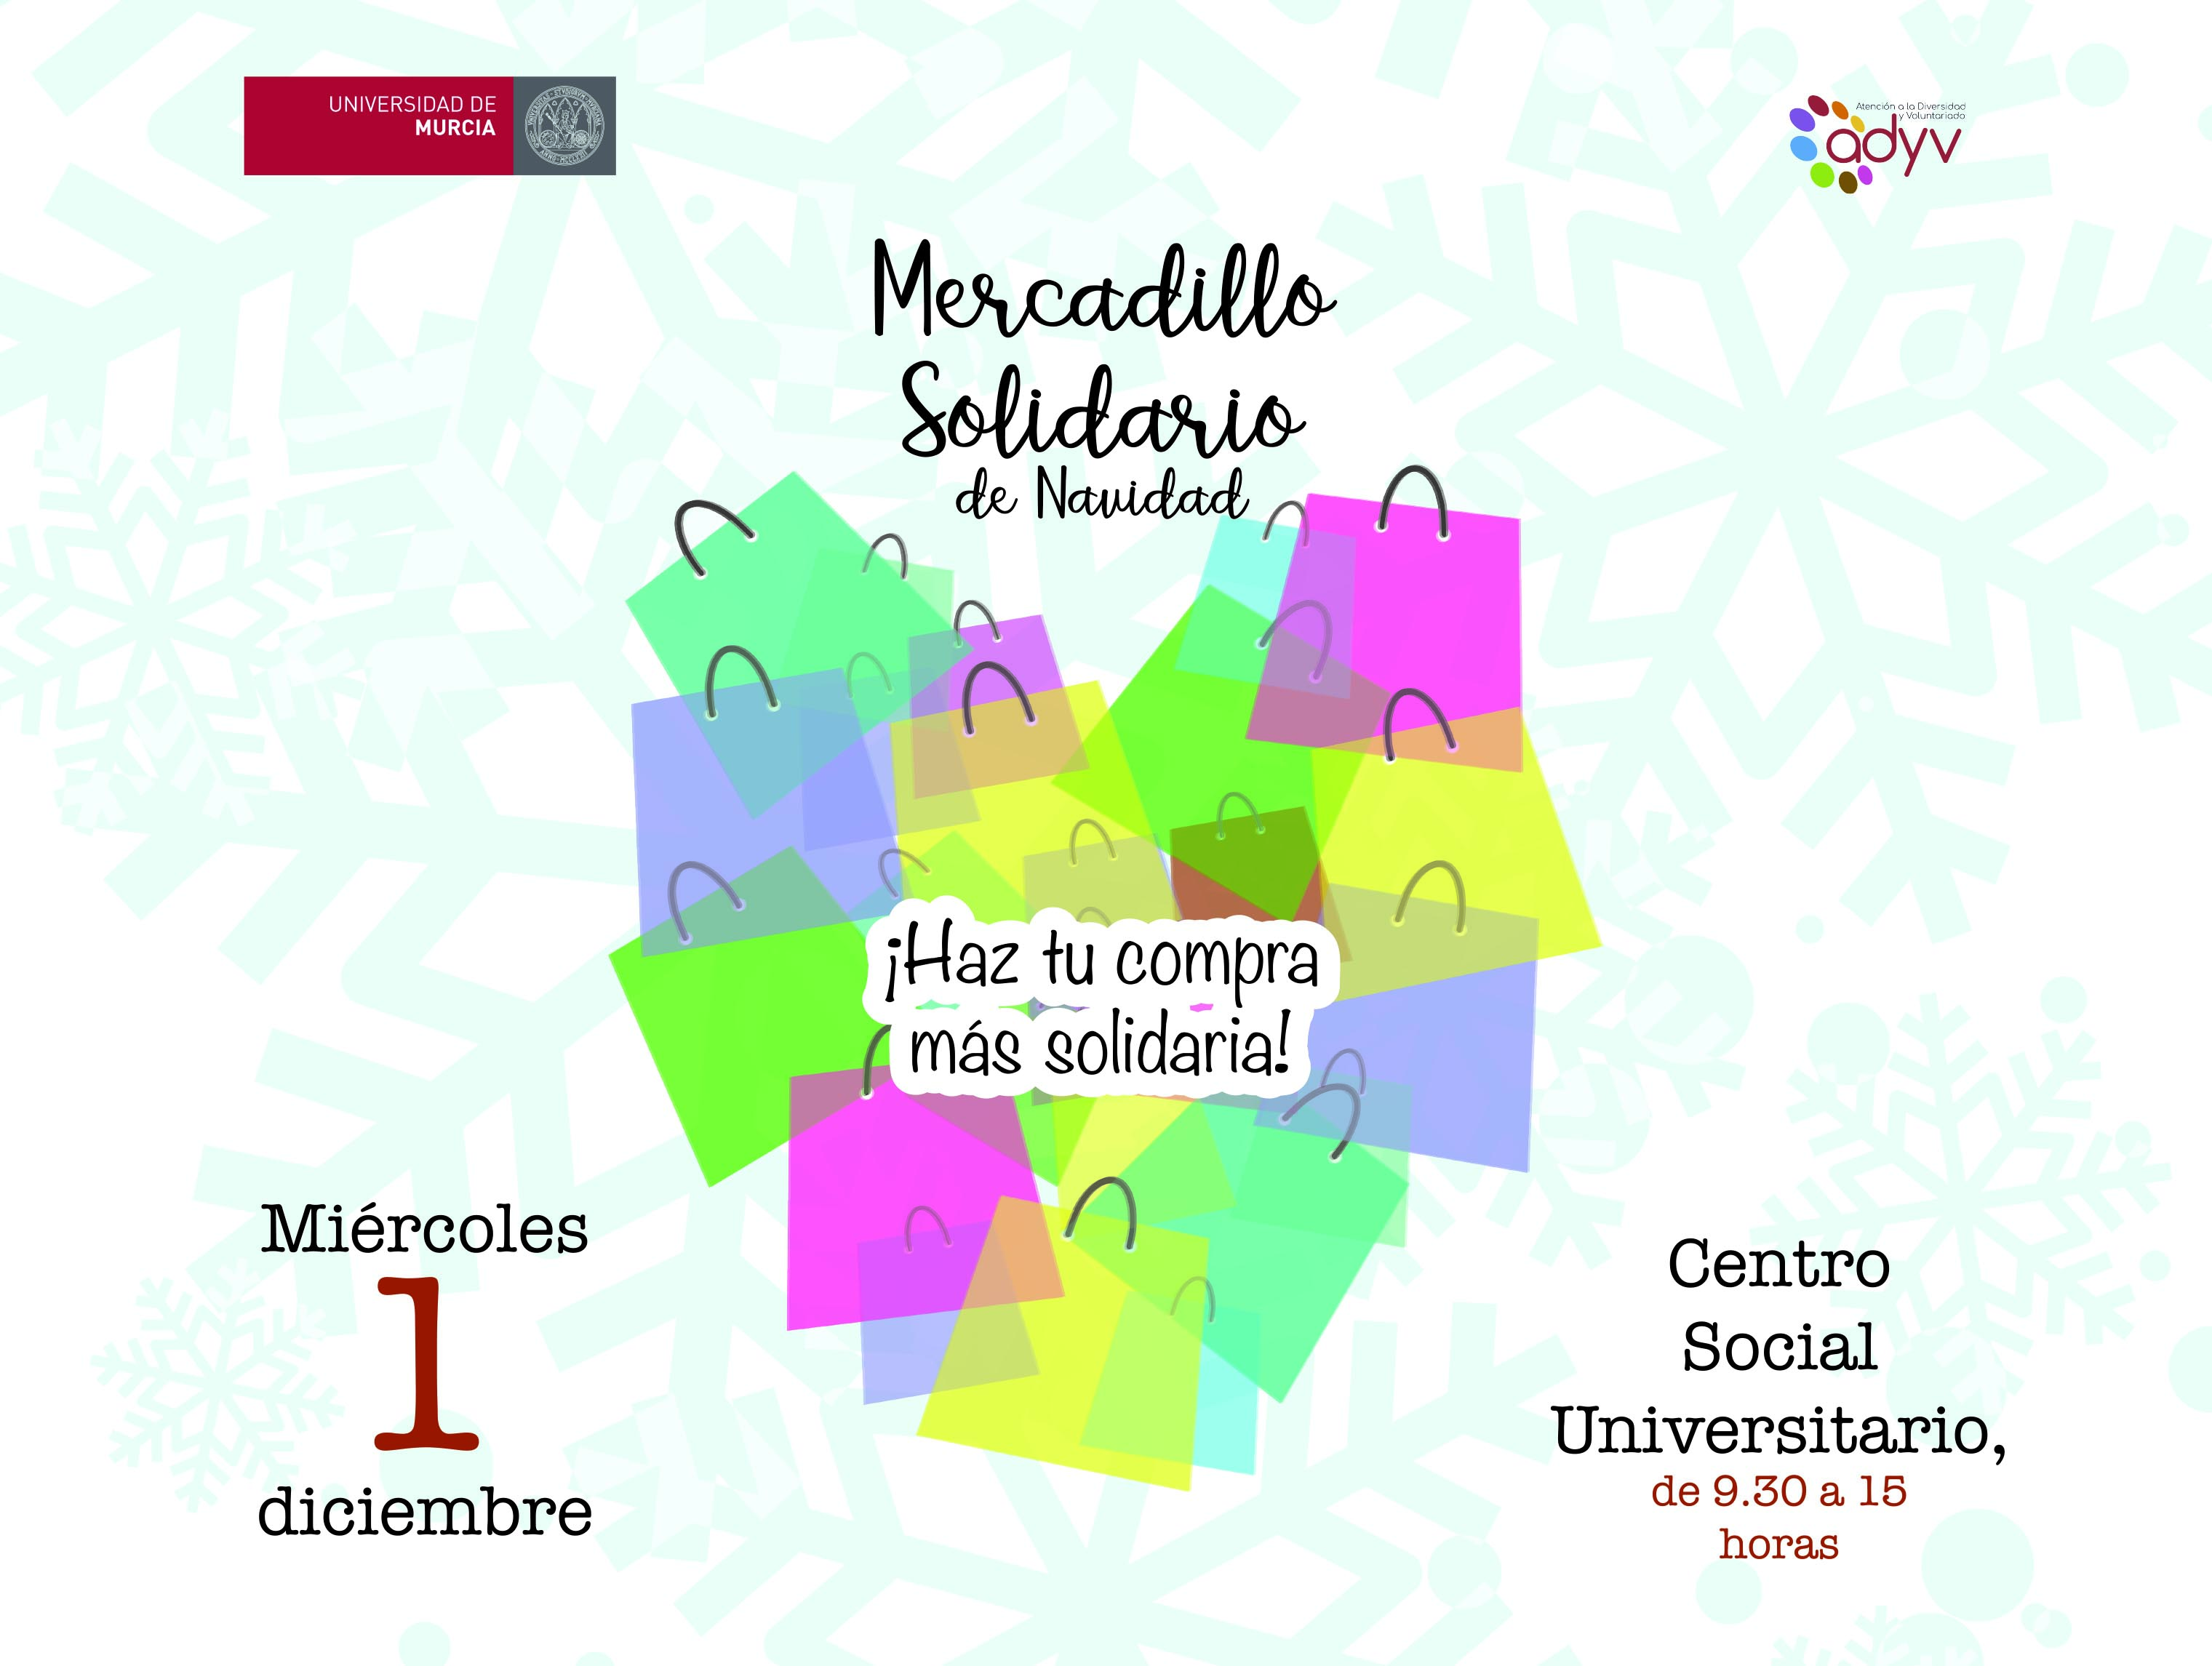 El próximo miércoles 1 de diciembre, haz tu compra más solidaria en el Mercadillo Solidario de la Universidad de Murcia